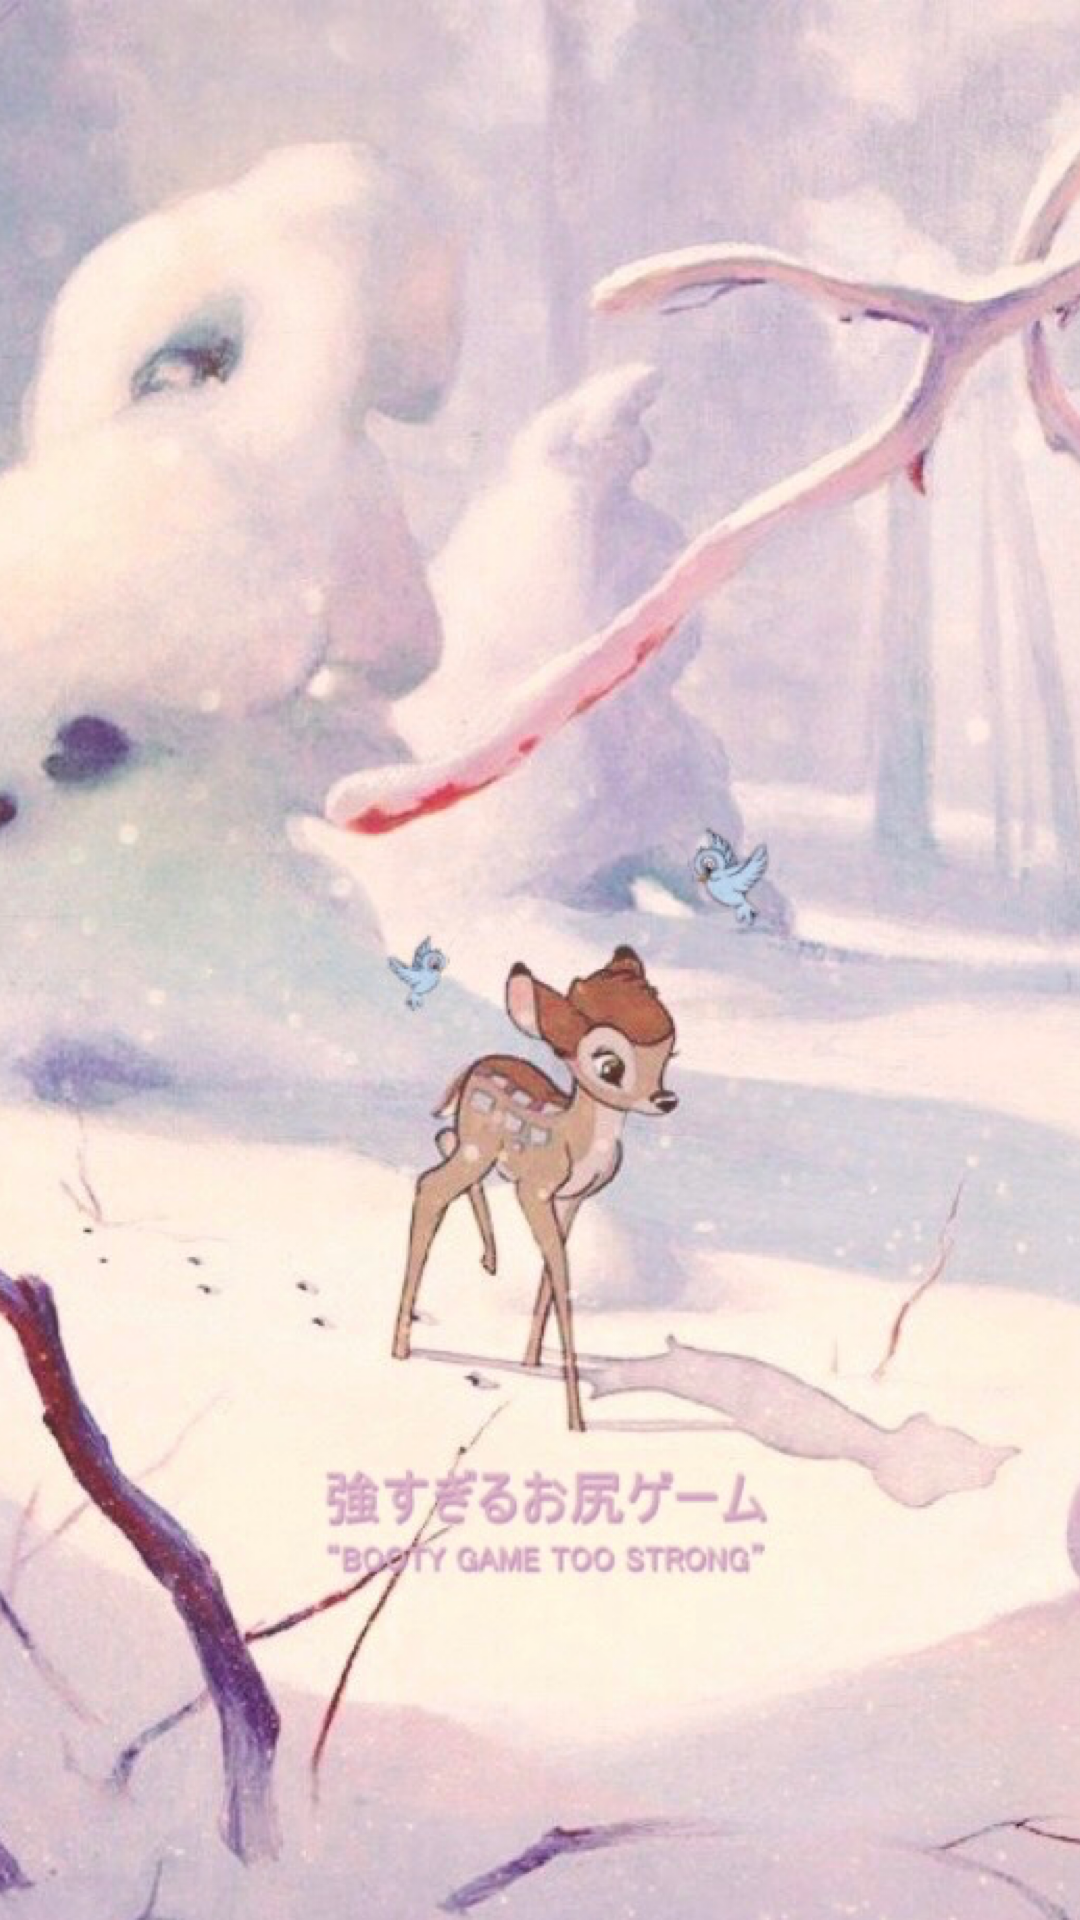 Bambi wallpaper. Cute cartoon wallpaper, Disney aesthetic, Bambi disney